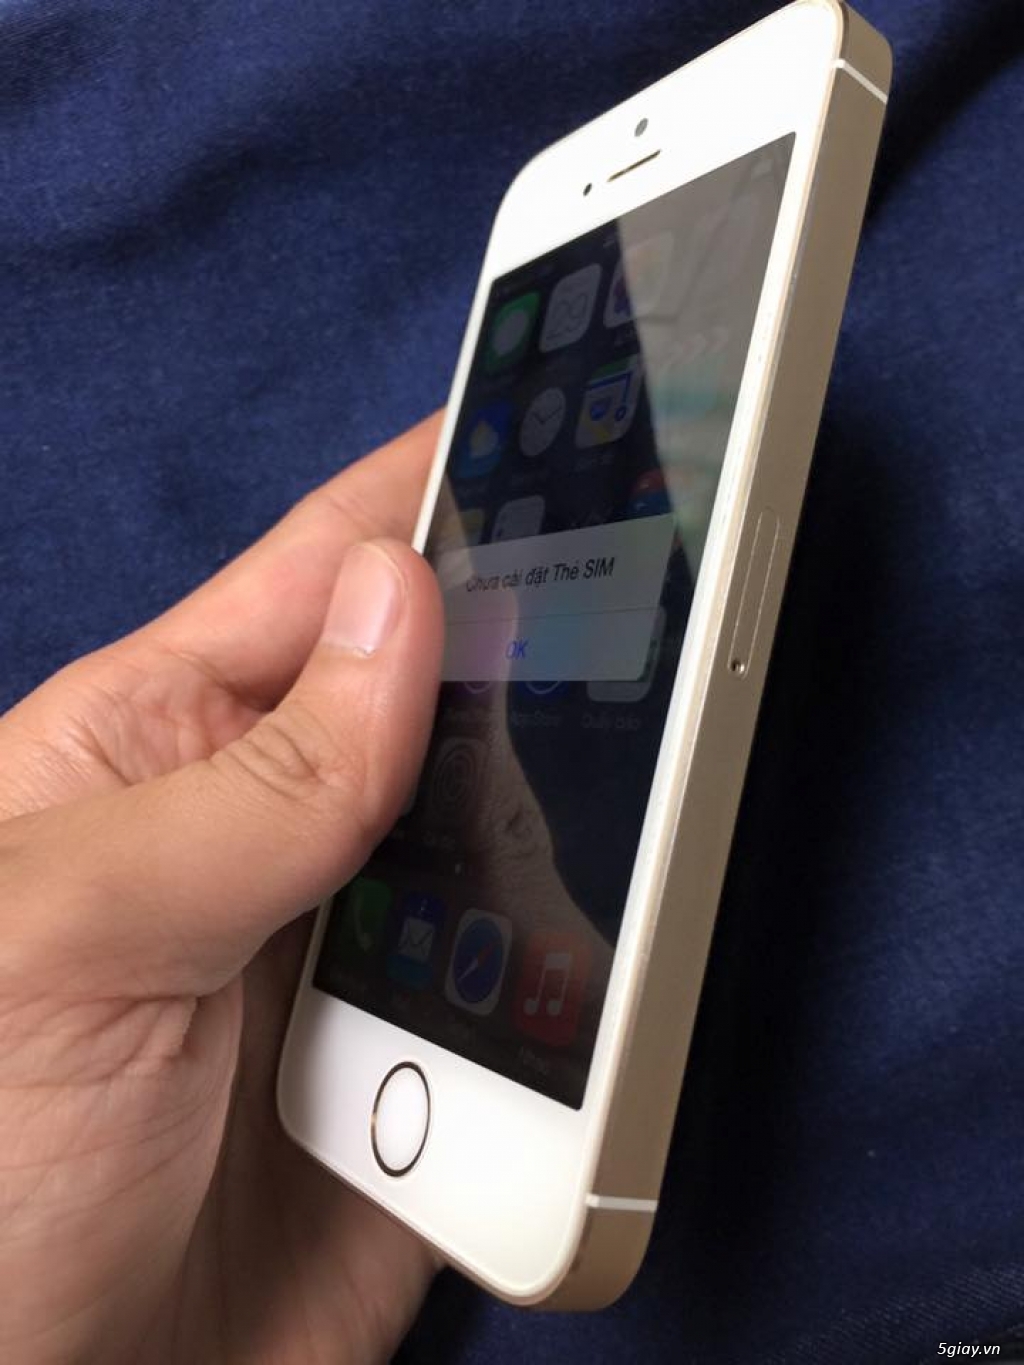 Iphone 5s 16gb gold zin từng con ốc đít - 3